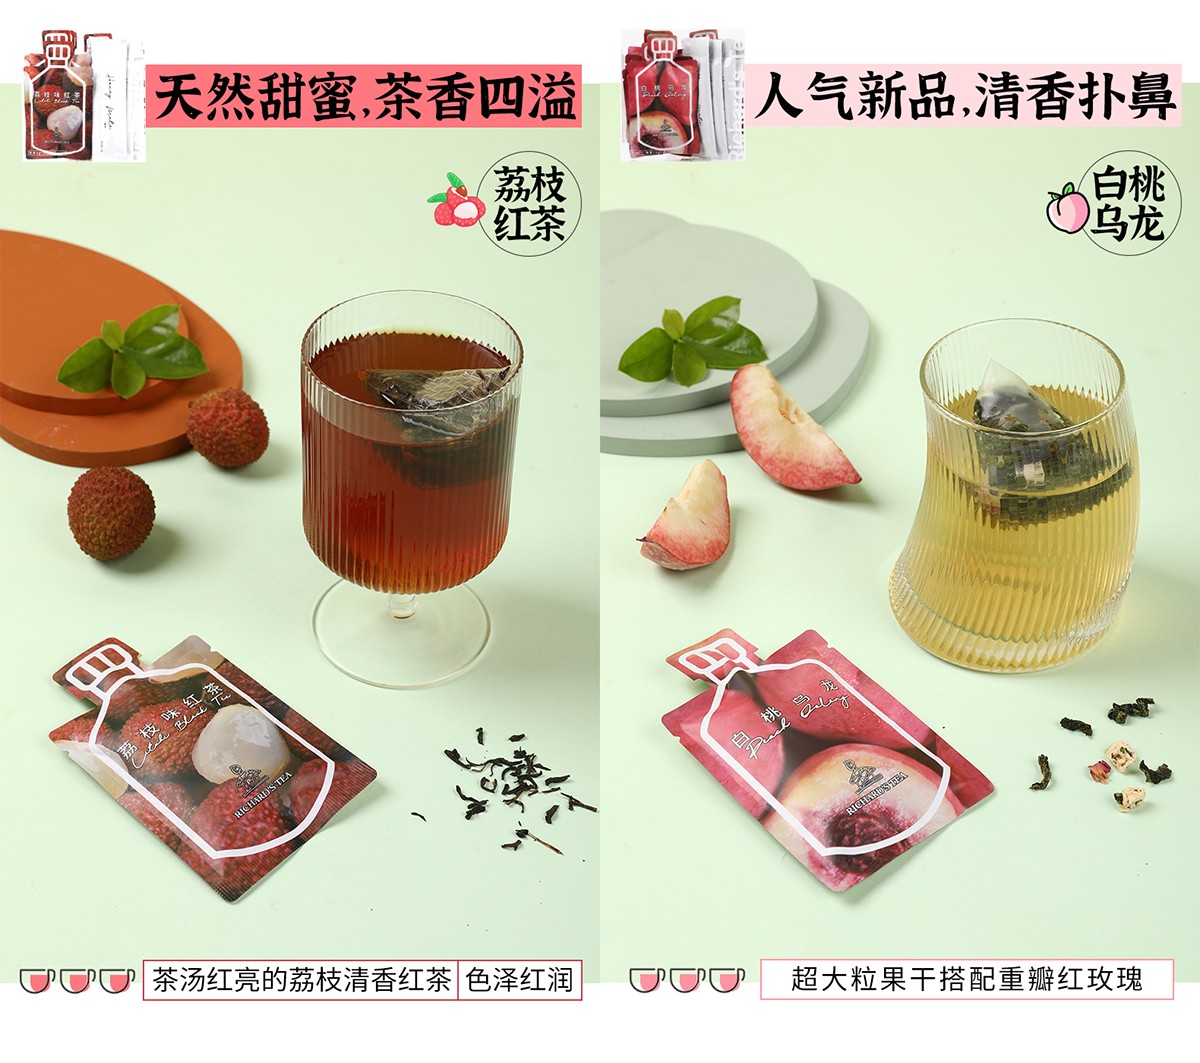 上海广告策划公司解读Richard’s tea手摇茶如何打破场景限制